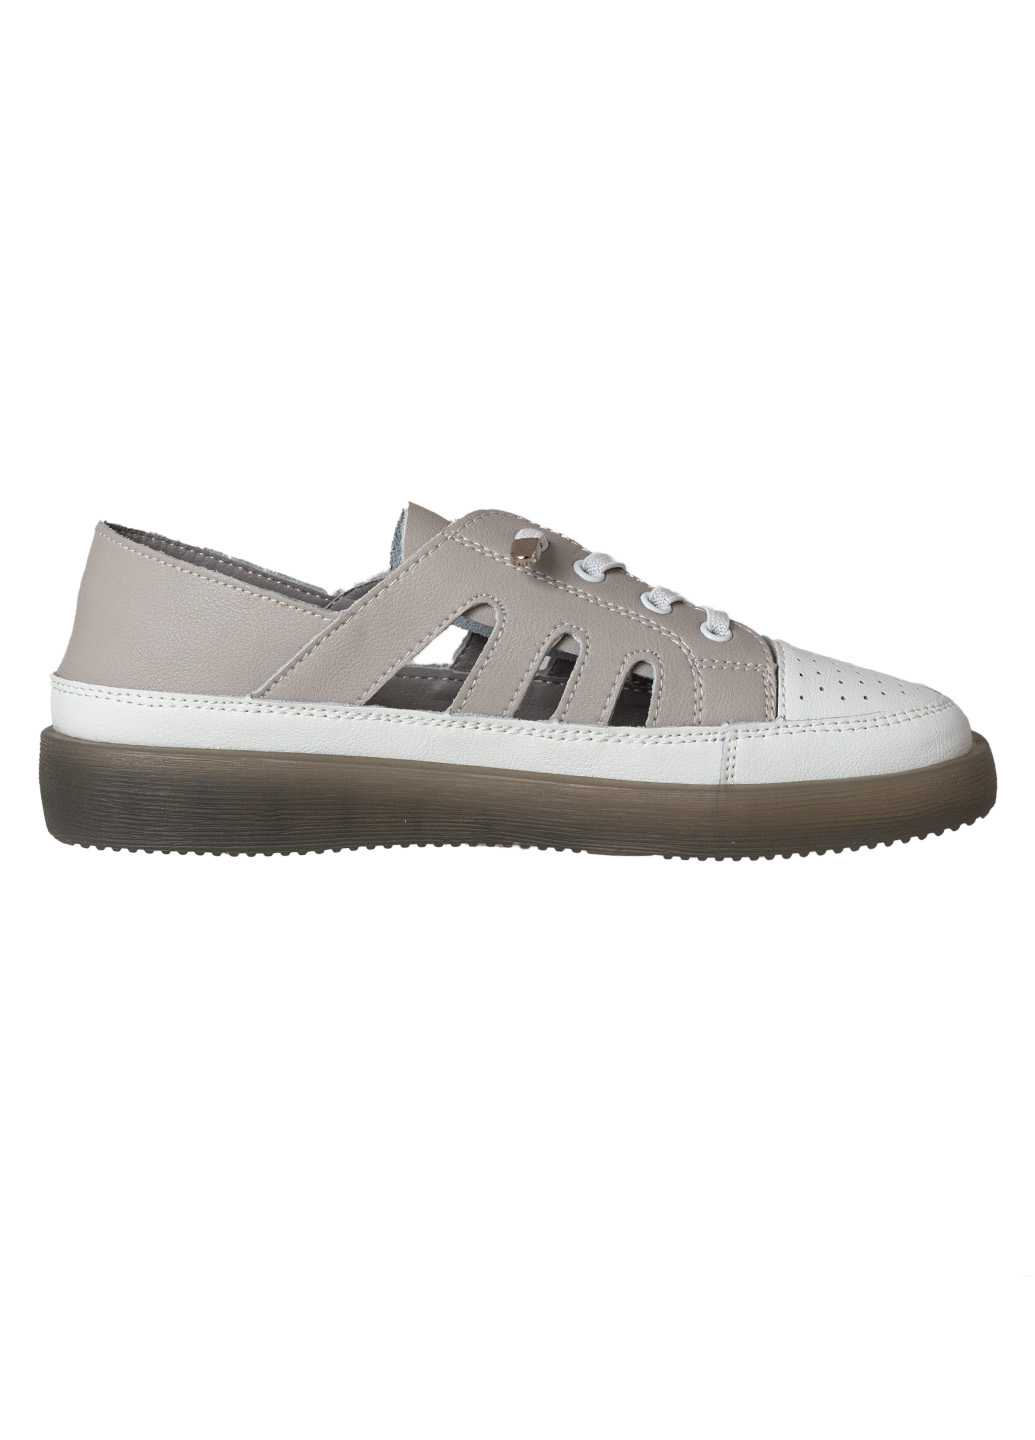 Жіночі туфлі з натуральної шкіри Lifexpert біло-сірого кольору перфорація